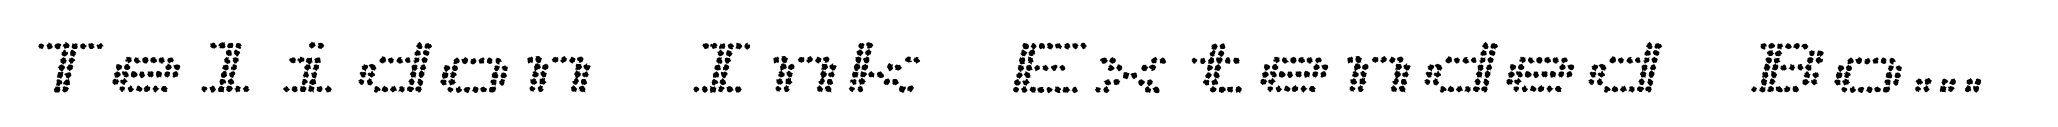 Telidon Ink Extended Bold Italic image